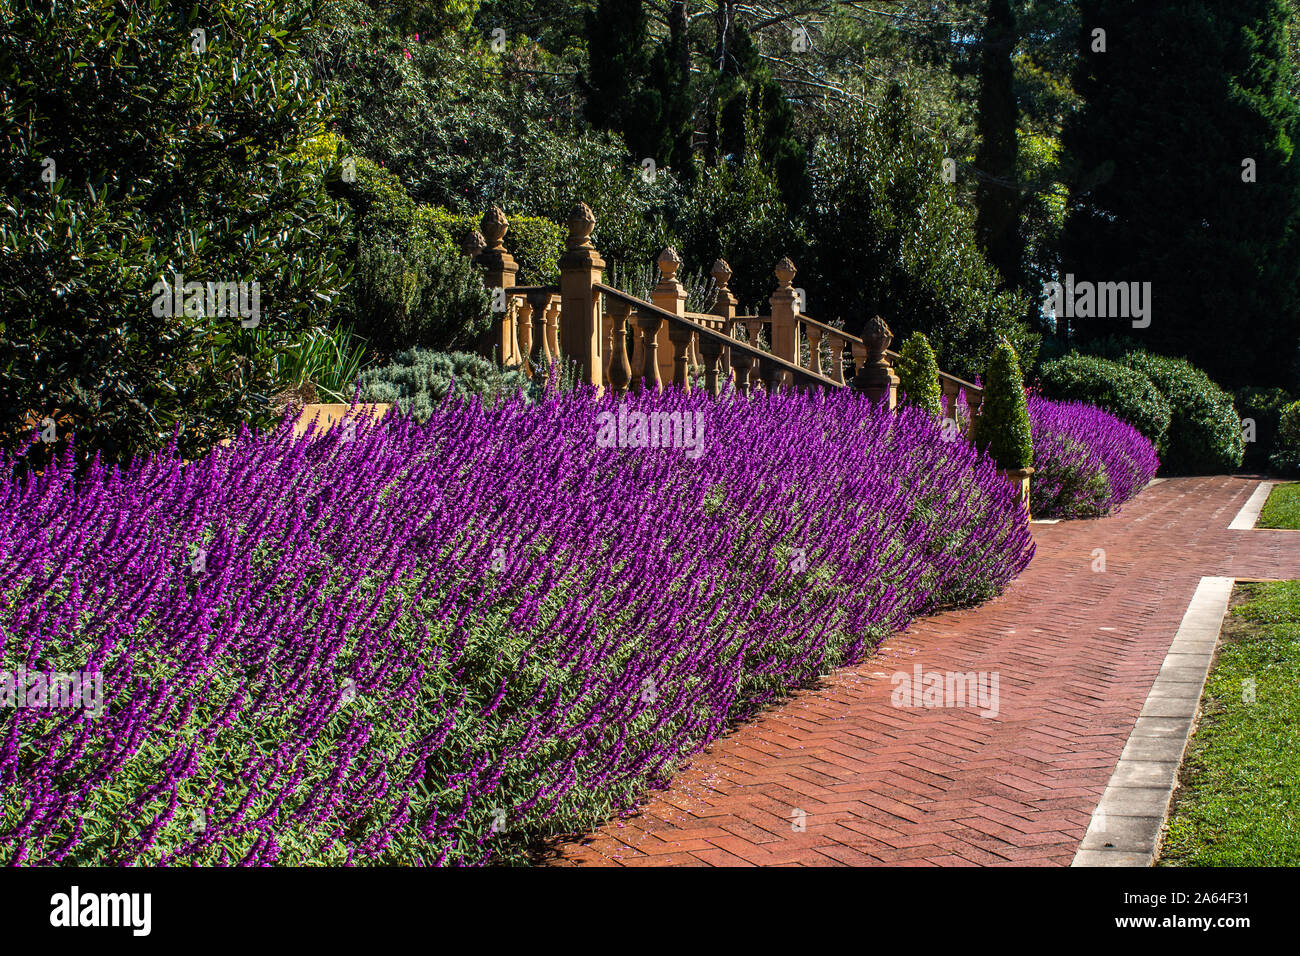 Viola lilla Salvia fiori messa piantare in giardino con percorso lastricato, scala, alberi Foto Stock